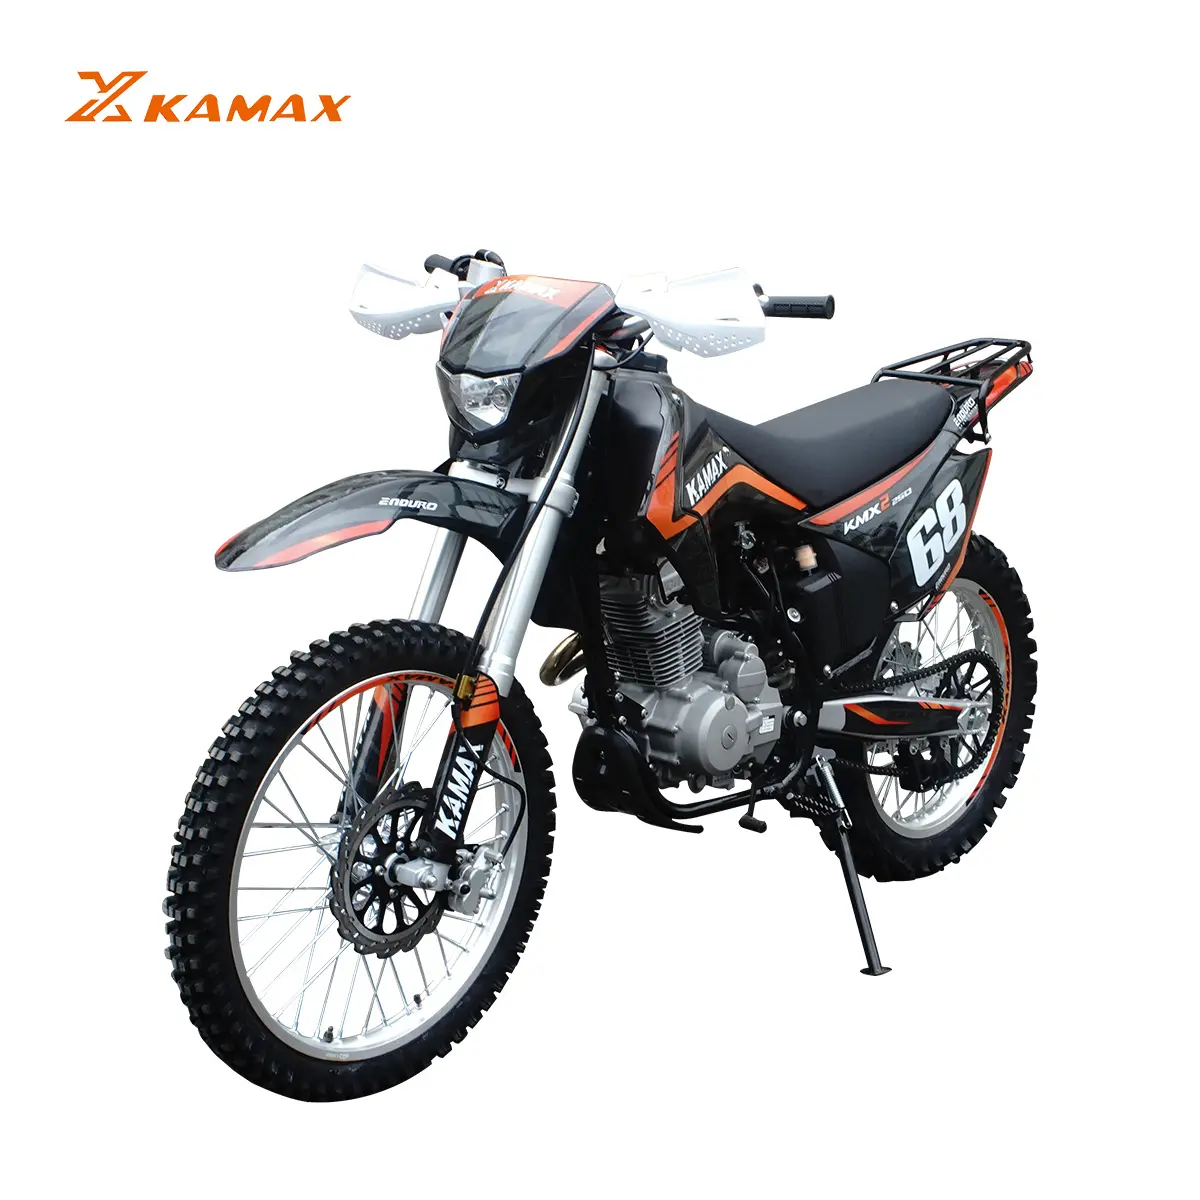 دراجة الطرق الوعرة الجديدة KAMAX بمحرك 250 سي سي KMX-2 دراجة بخارية أخرى رباعية الأشواط إندورو موتوكروس رخيصة للبيع صناعة صينية للكبار